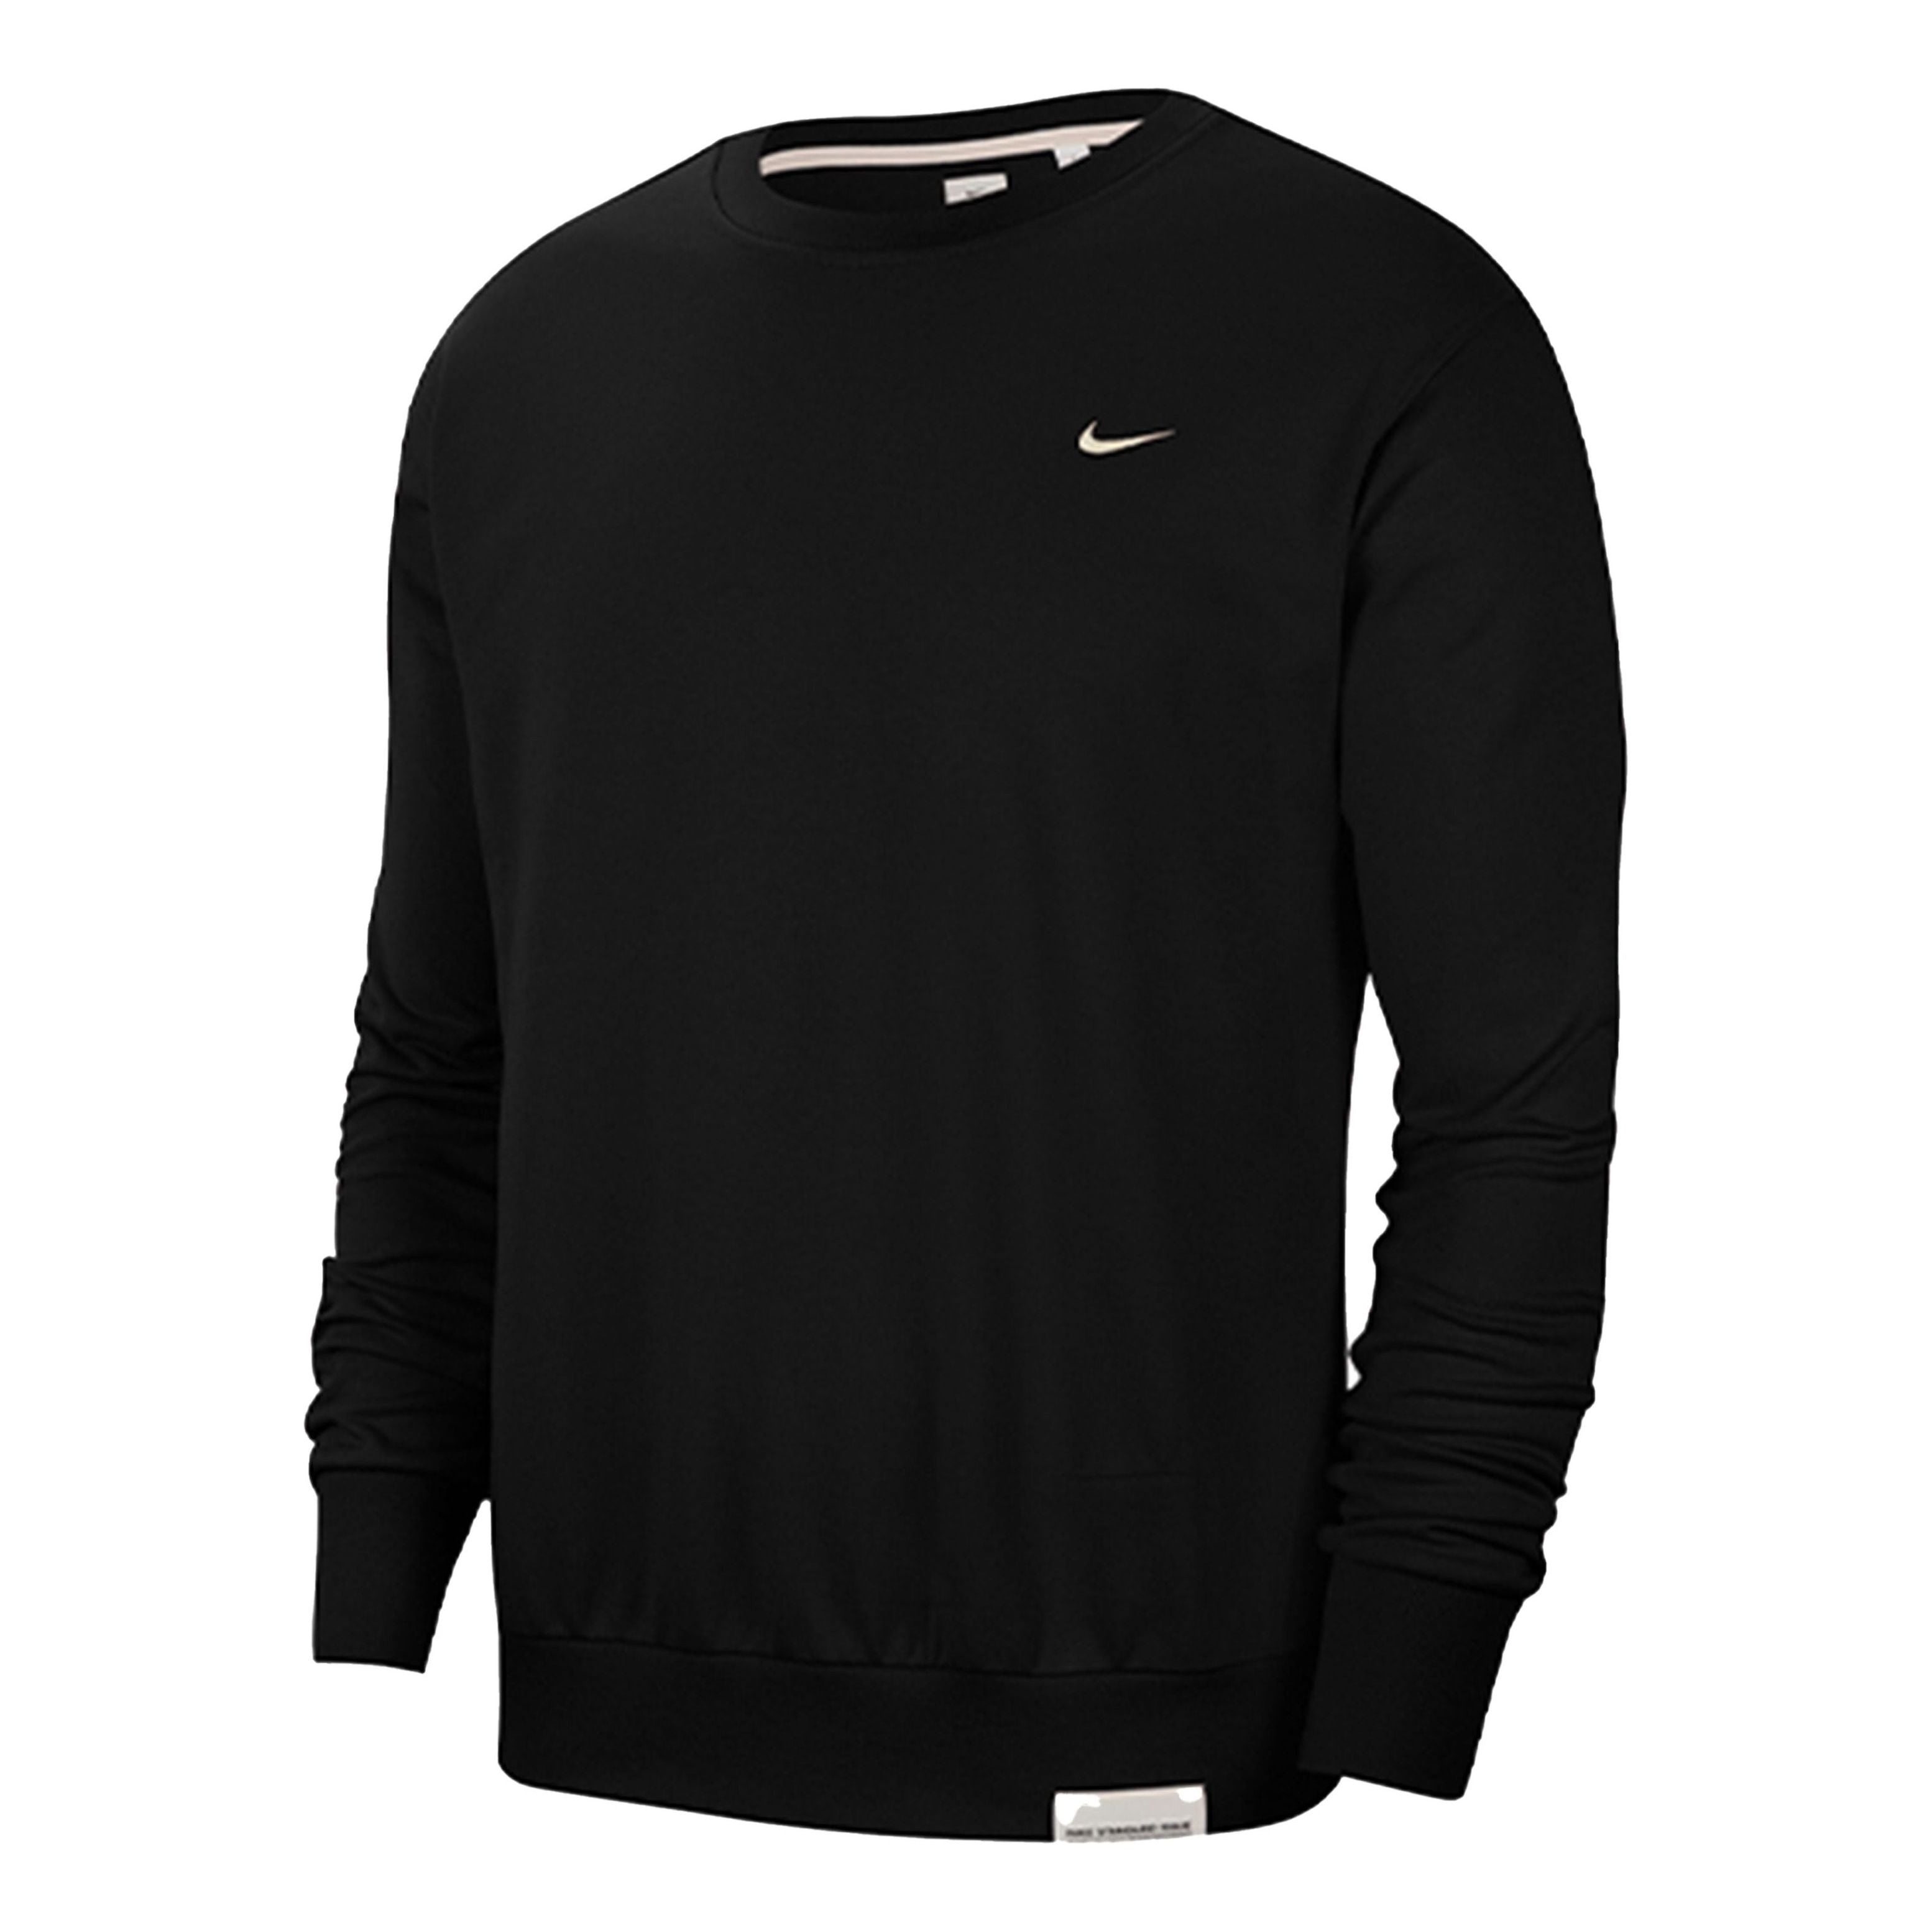 Nike Standard Issue Dri-FIT Crew Neck Sweatshirt Black CK6359-010 - 1